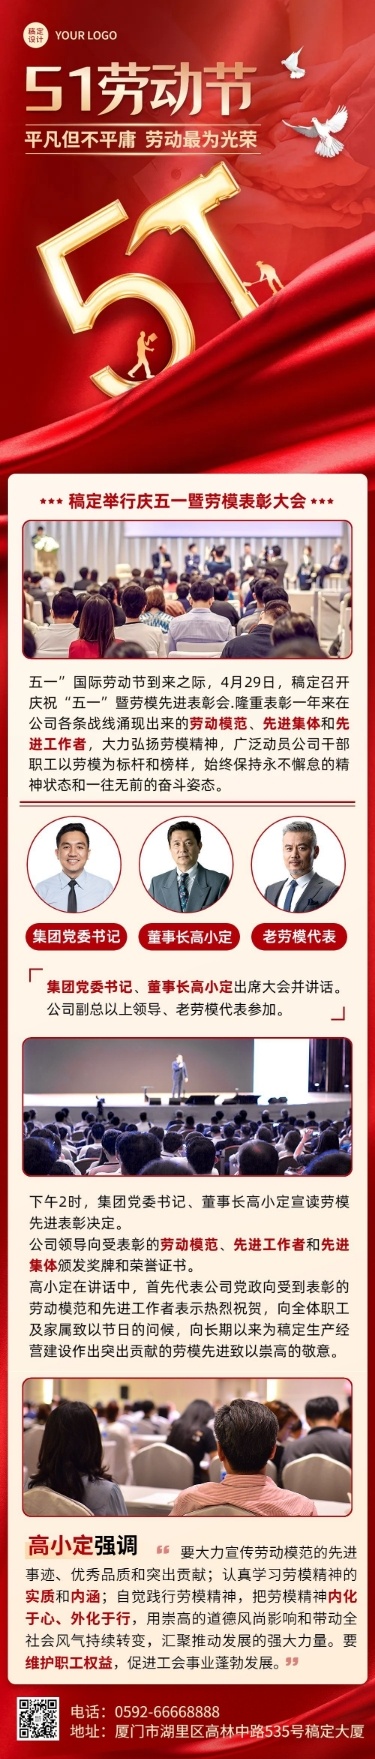 劳动节企业商务企业工会党政活动文章长图